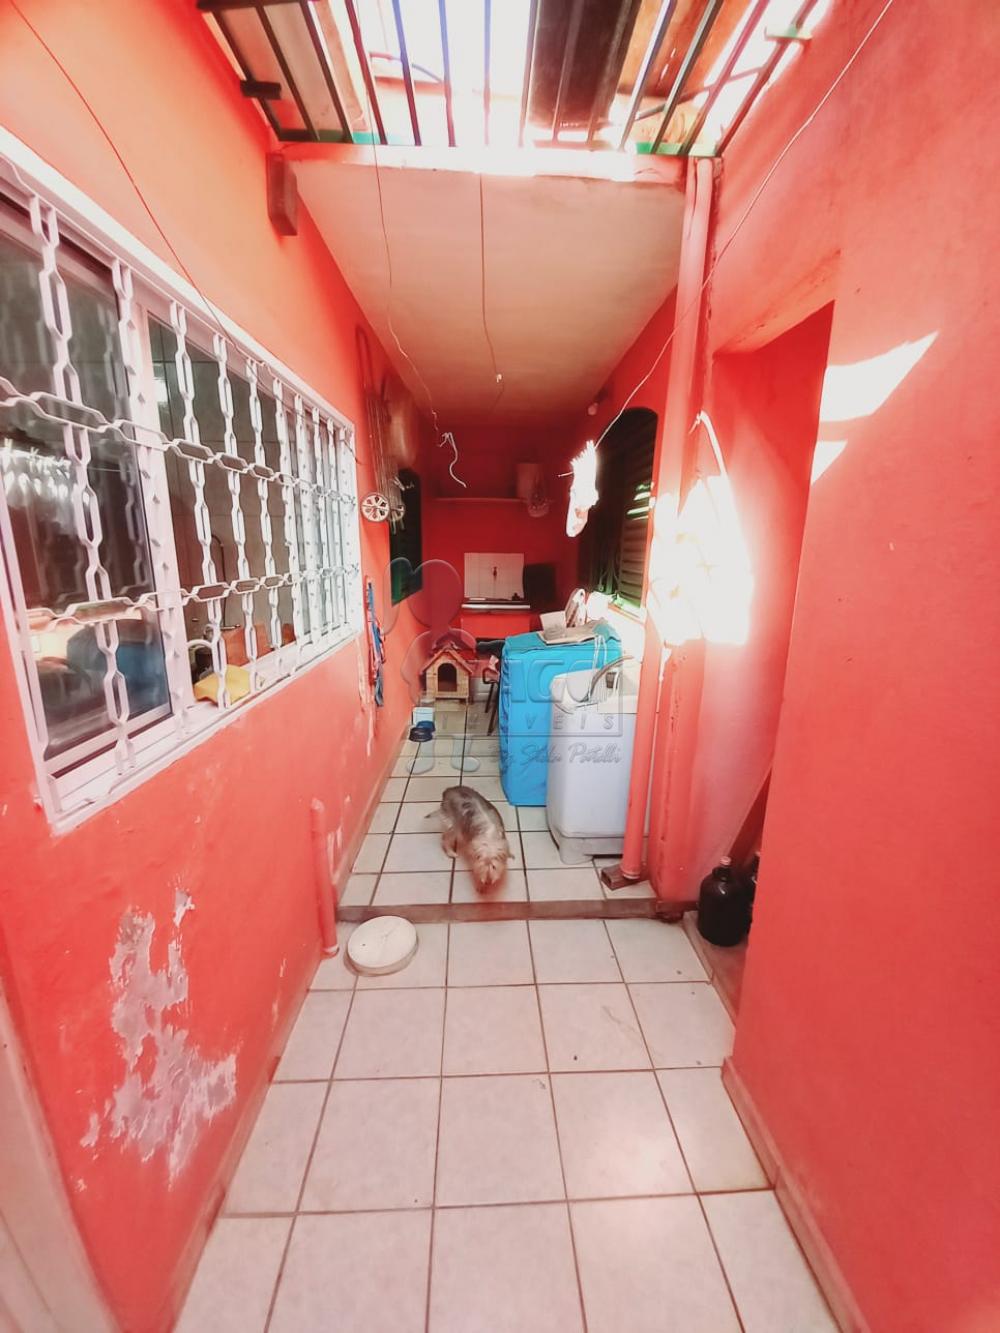 Comprar Casas / Padrão em Ribeirão Preto R$ 300.000,00 - Foto 22